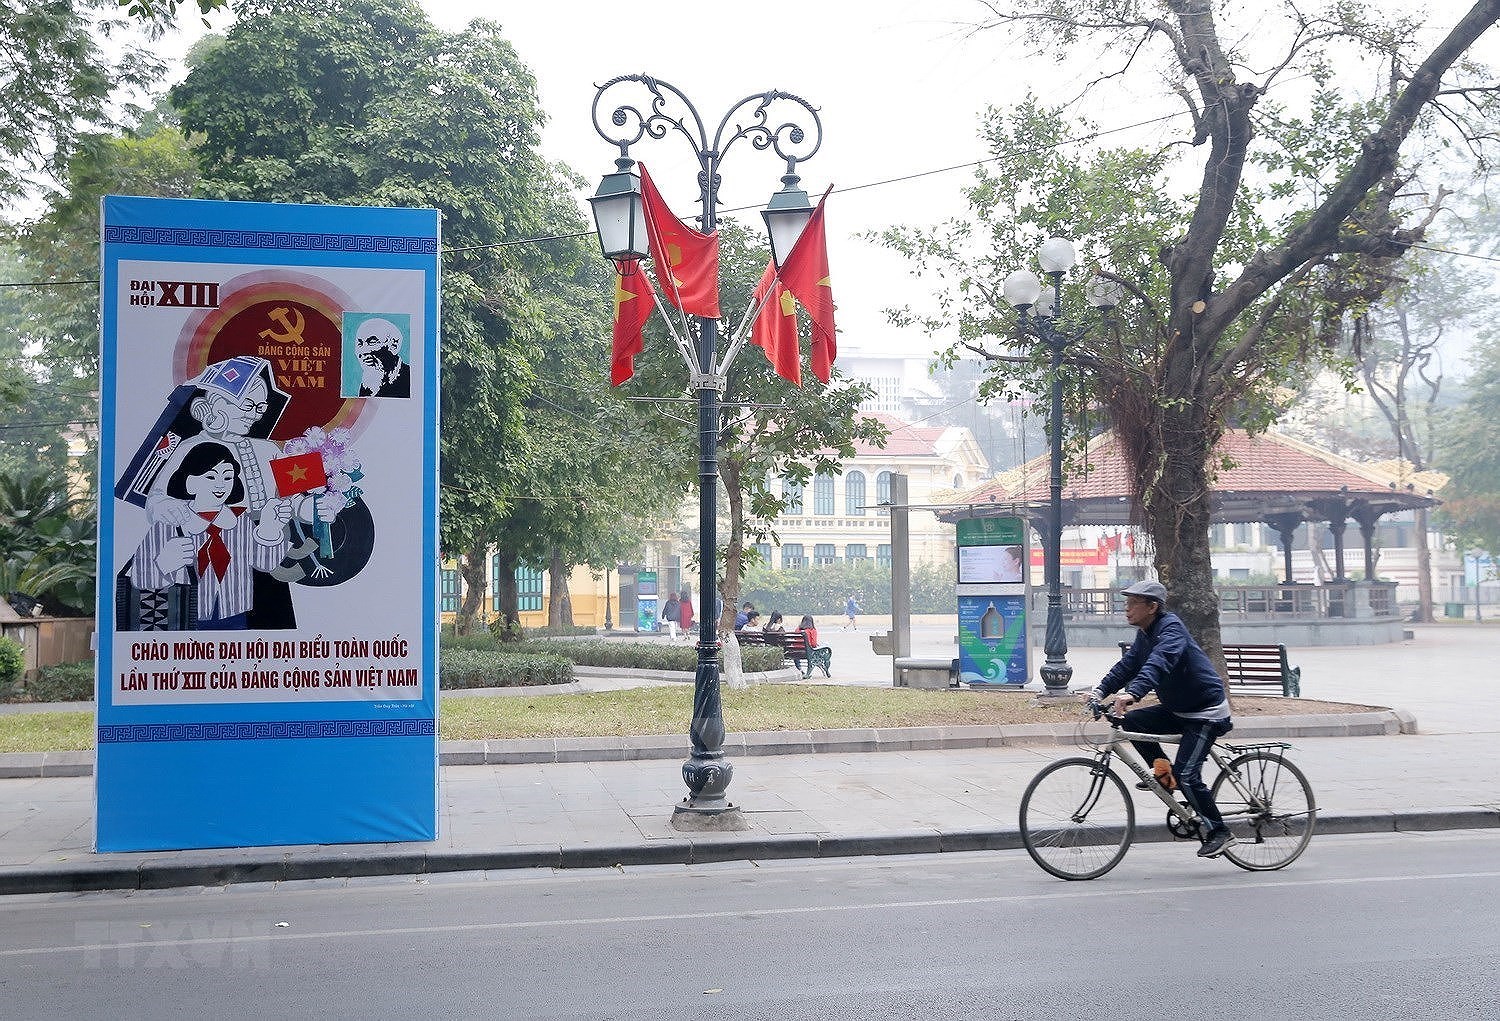 Calles de Hanoi decoradas con banderas nacionales y flores para dar la bienvenida al XIII Congreso del PCV hinh anh 3